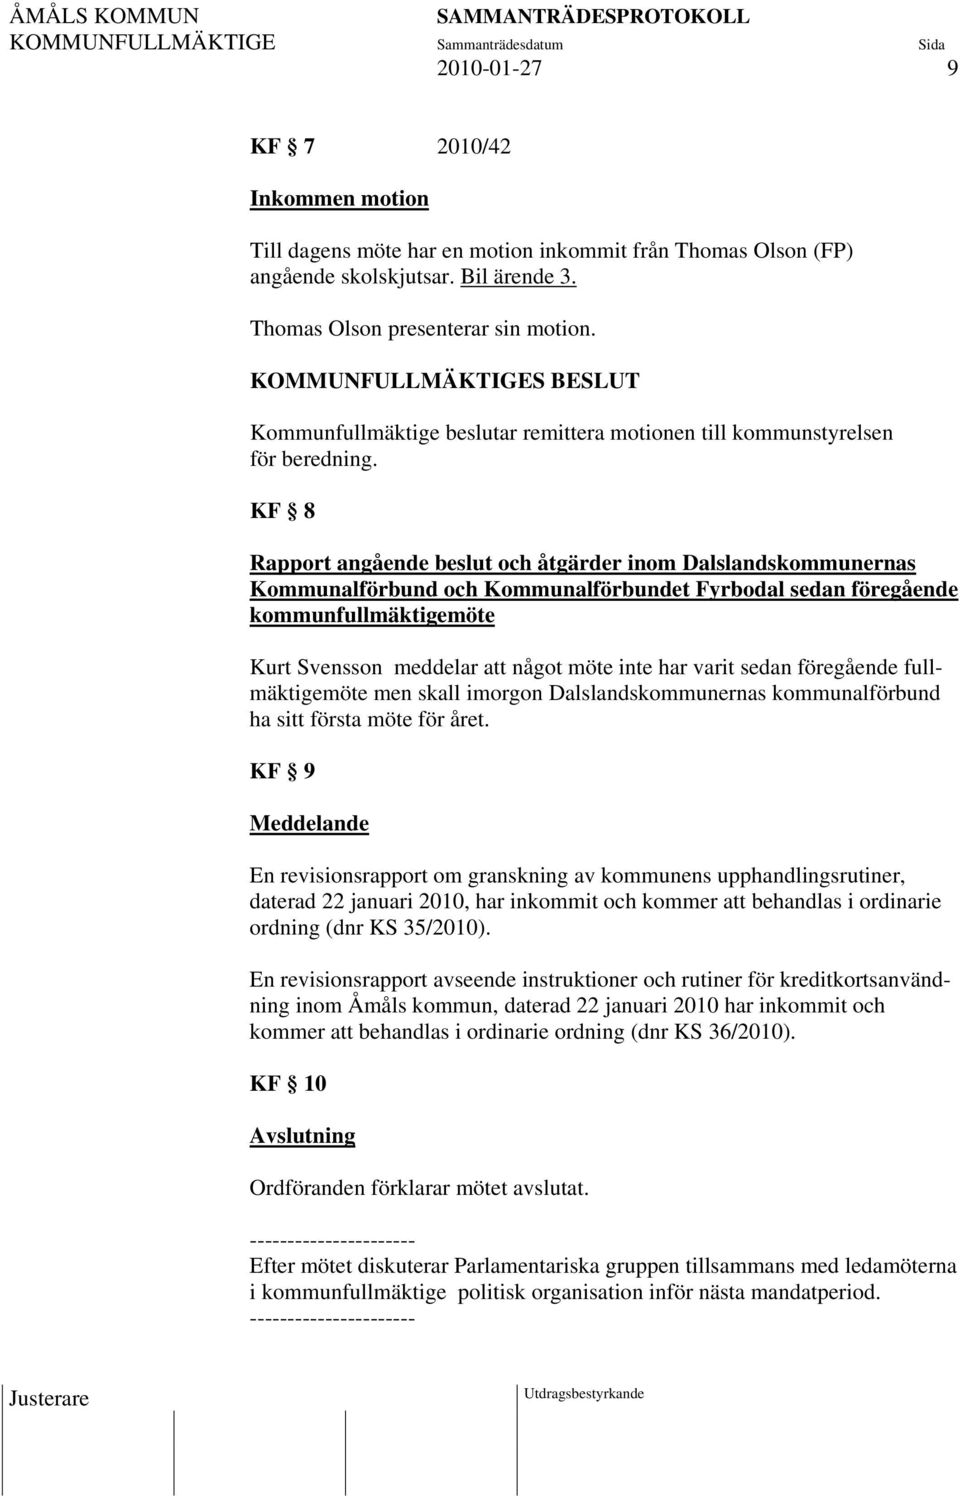 KF 8 Rapport angående beslut och åtgärder inom Dalslandskommunernas Kommunalförbund och Kommunalförbundet Fyrbodal sedan föregående kommunfullmäktigemöte Kurt Svensson meddelar att något möte inte